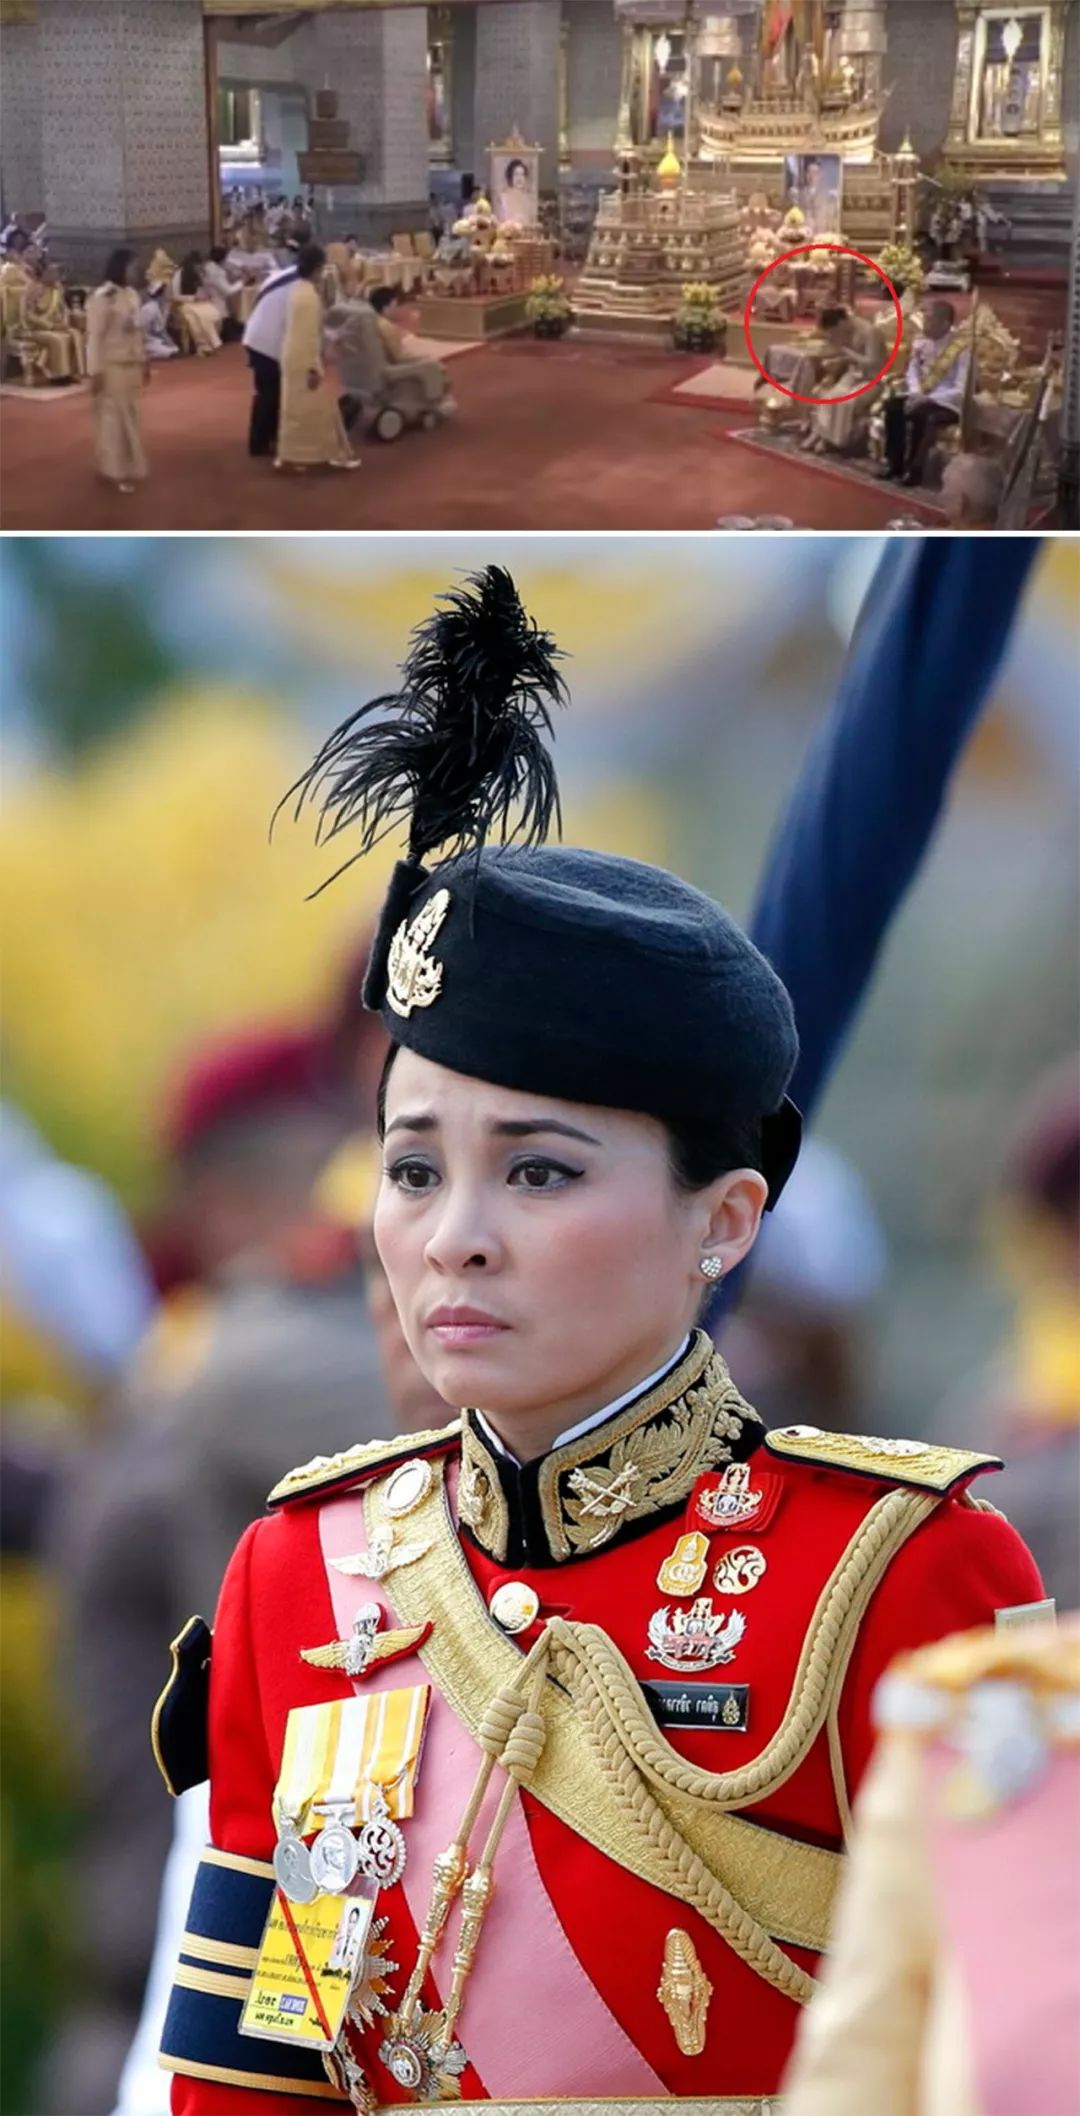 泰国新国王玛哈赐封全体王室成员:册封第一任妻子为王长女懿母妃殿下